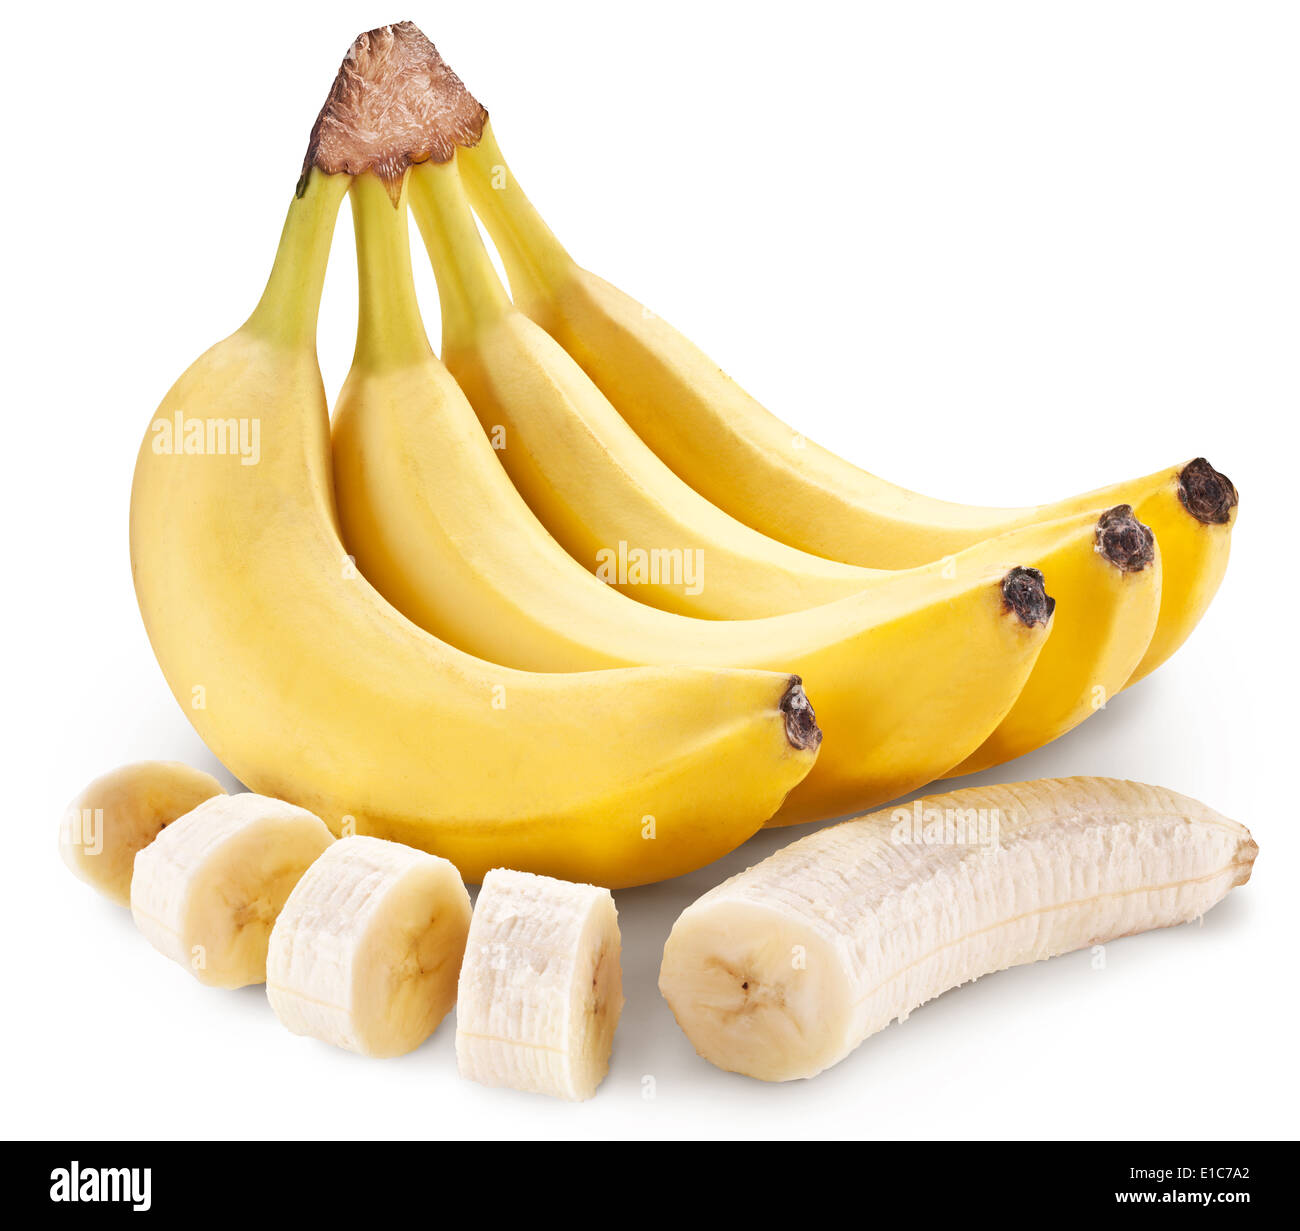 Banane Frucht mit Bananenstücke. Datei enthält Beschneidungspfade. Stockfoto